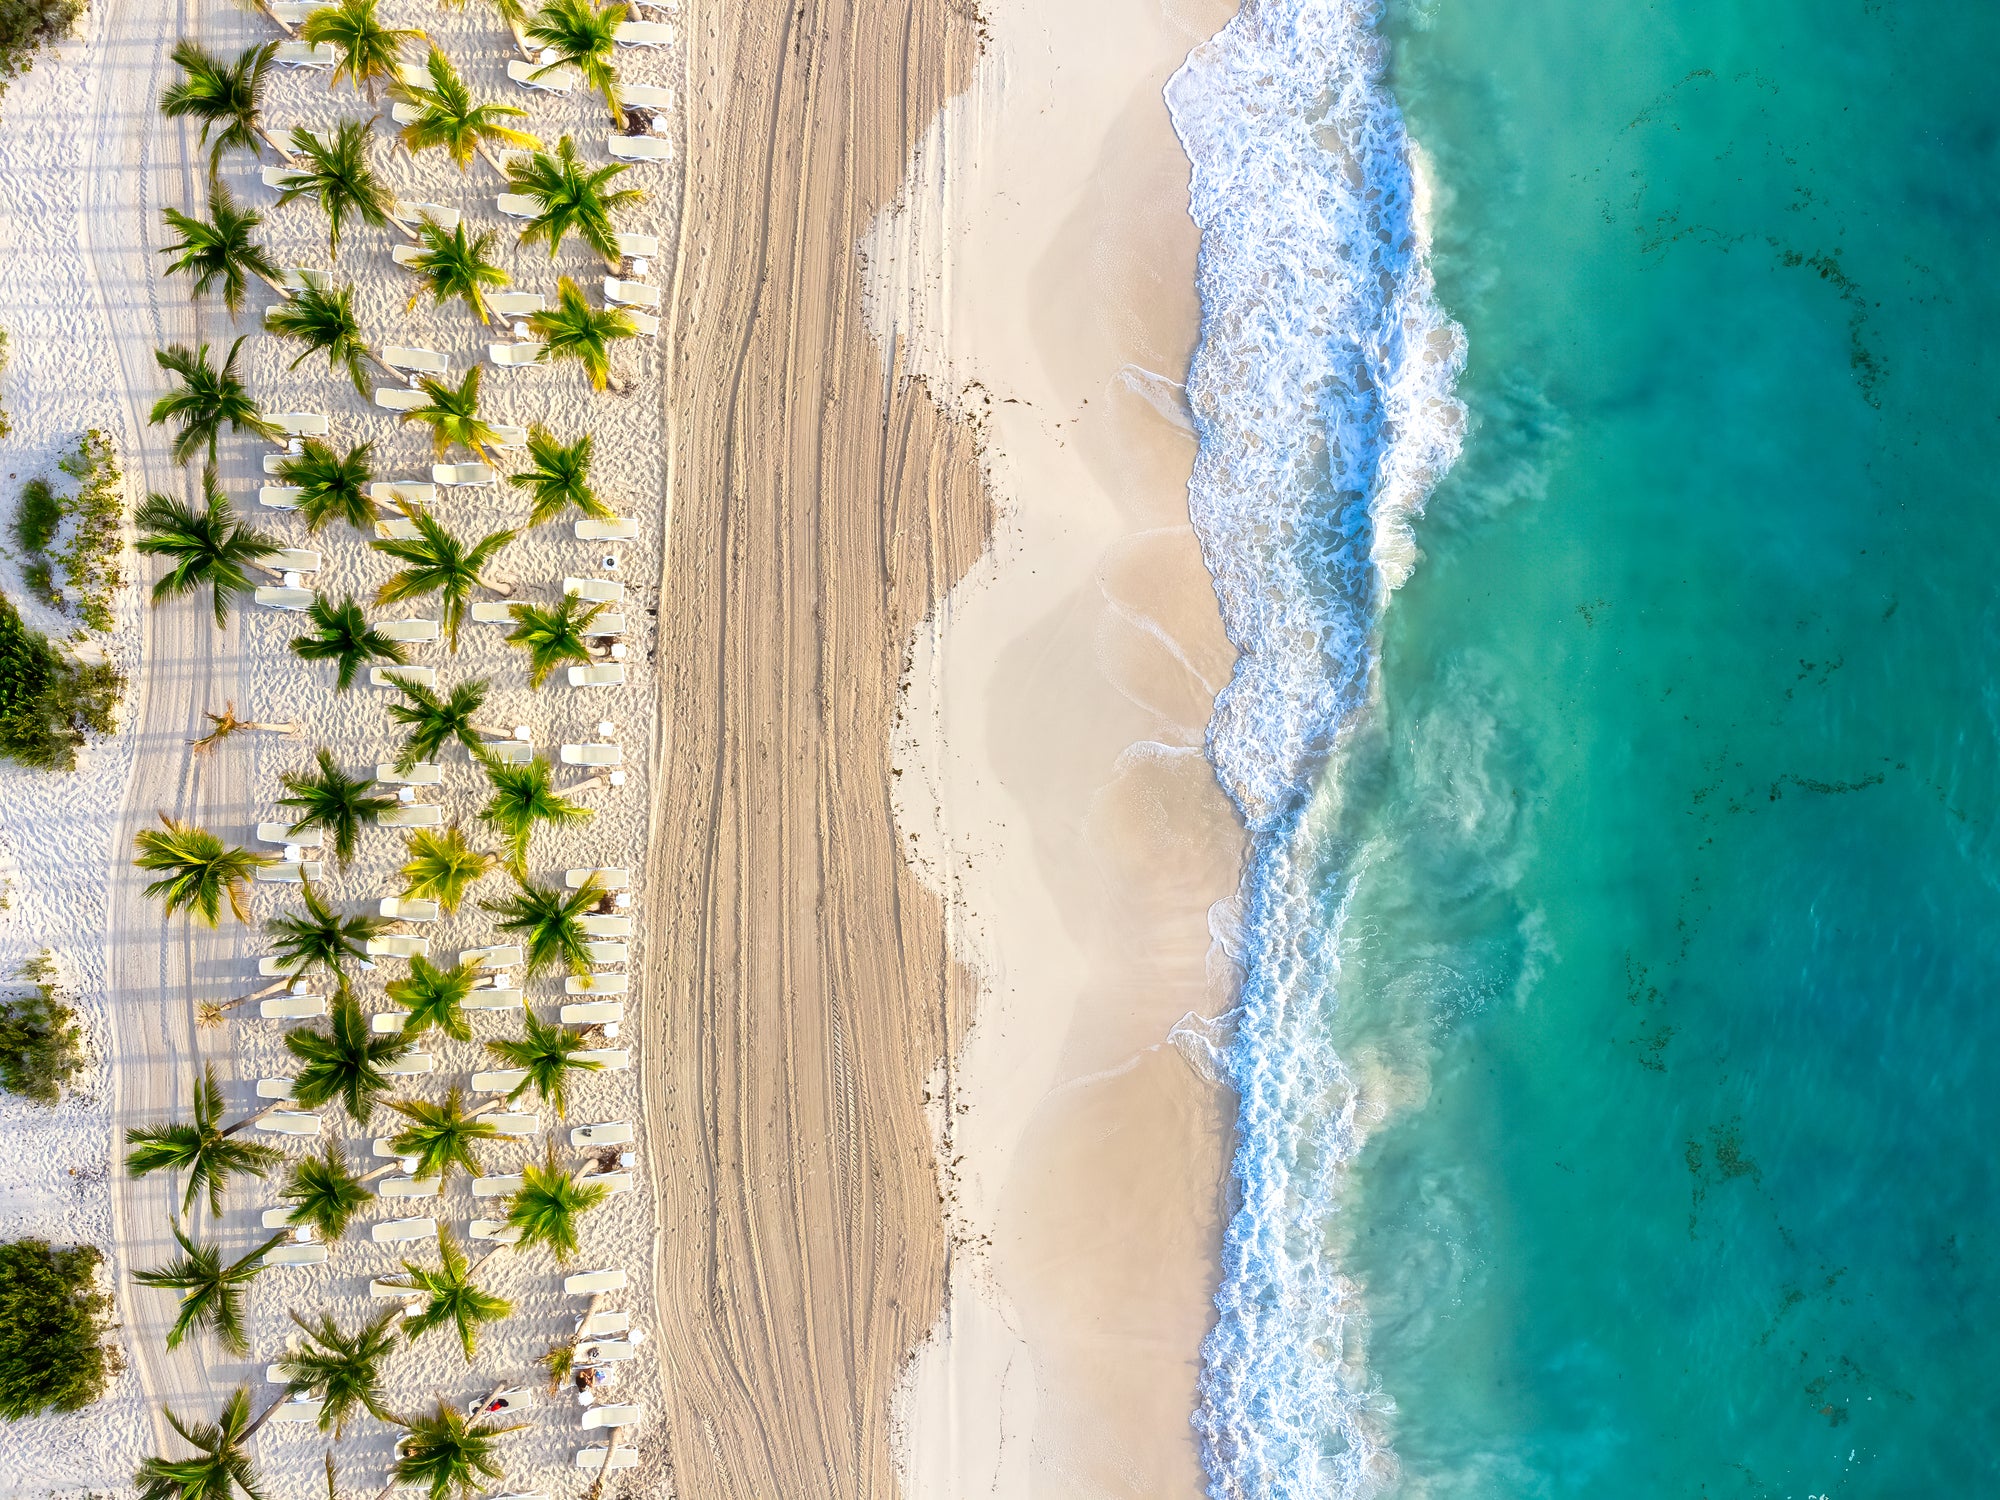 Mexico beach